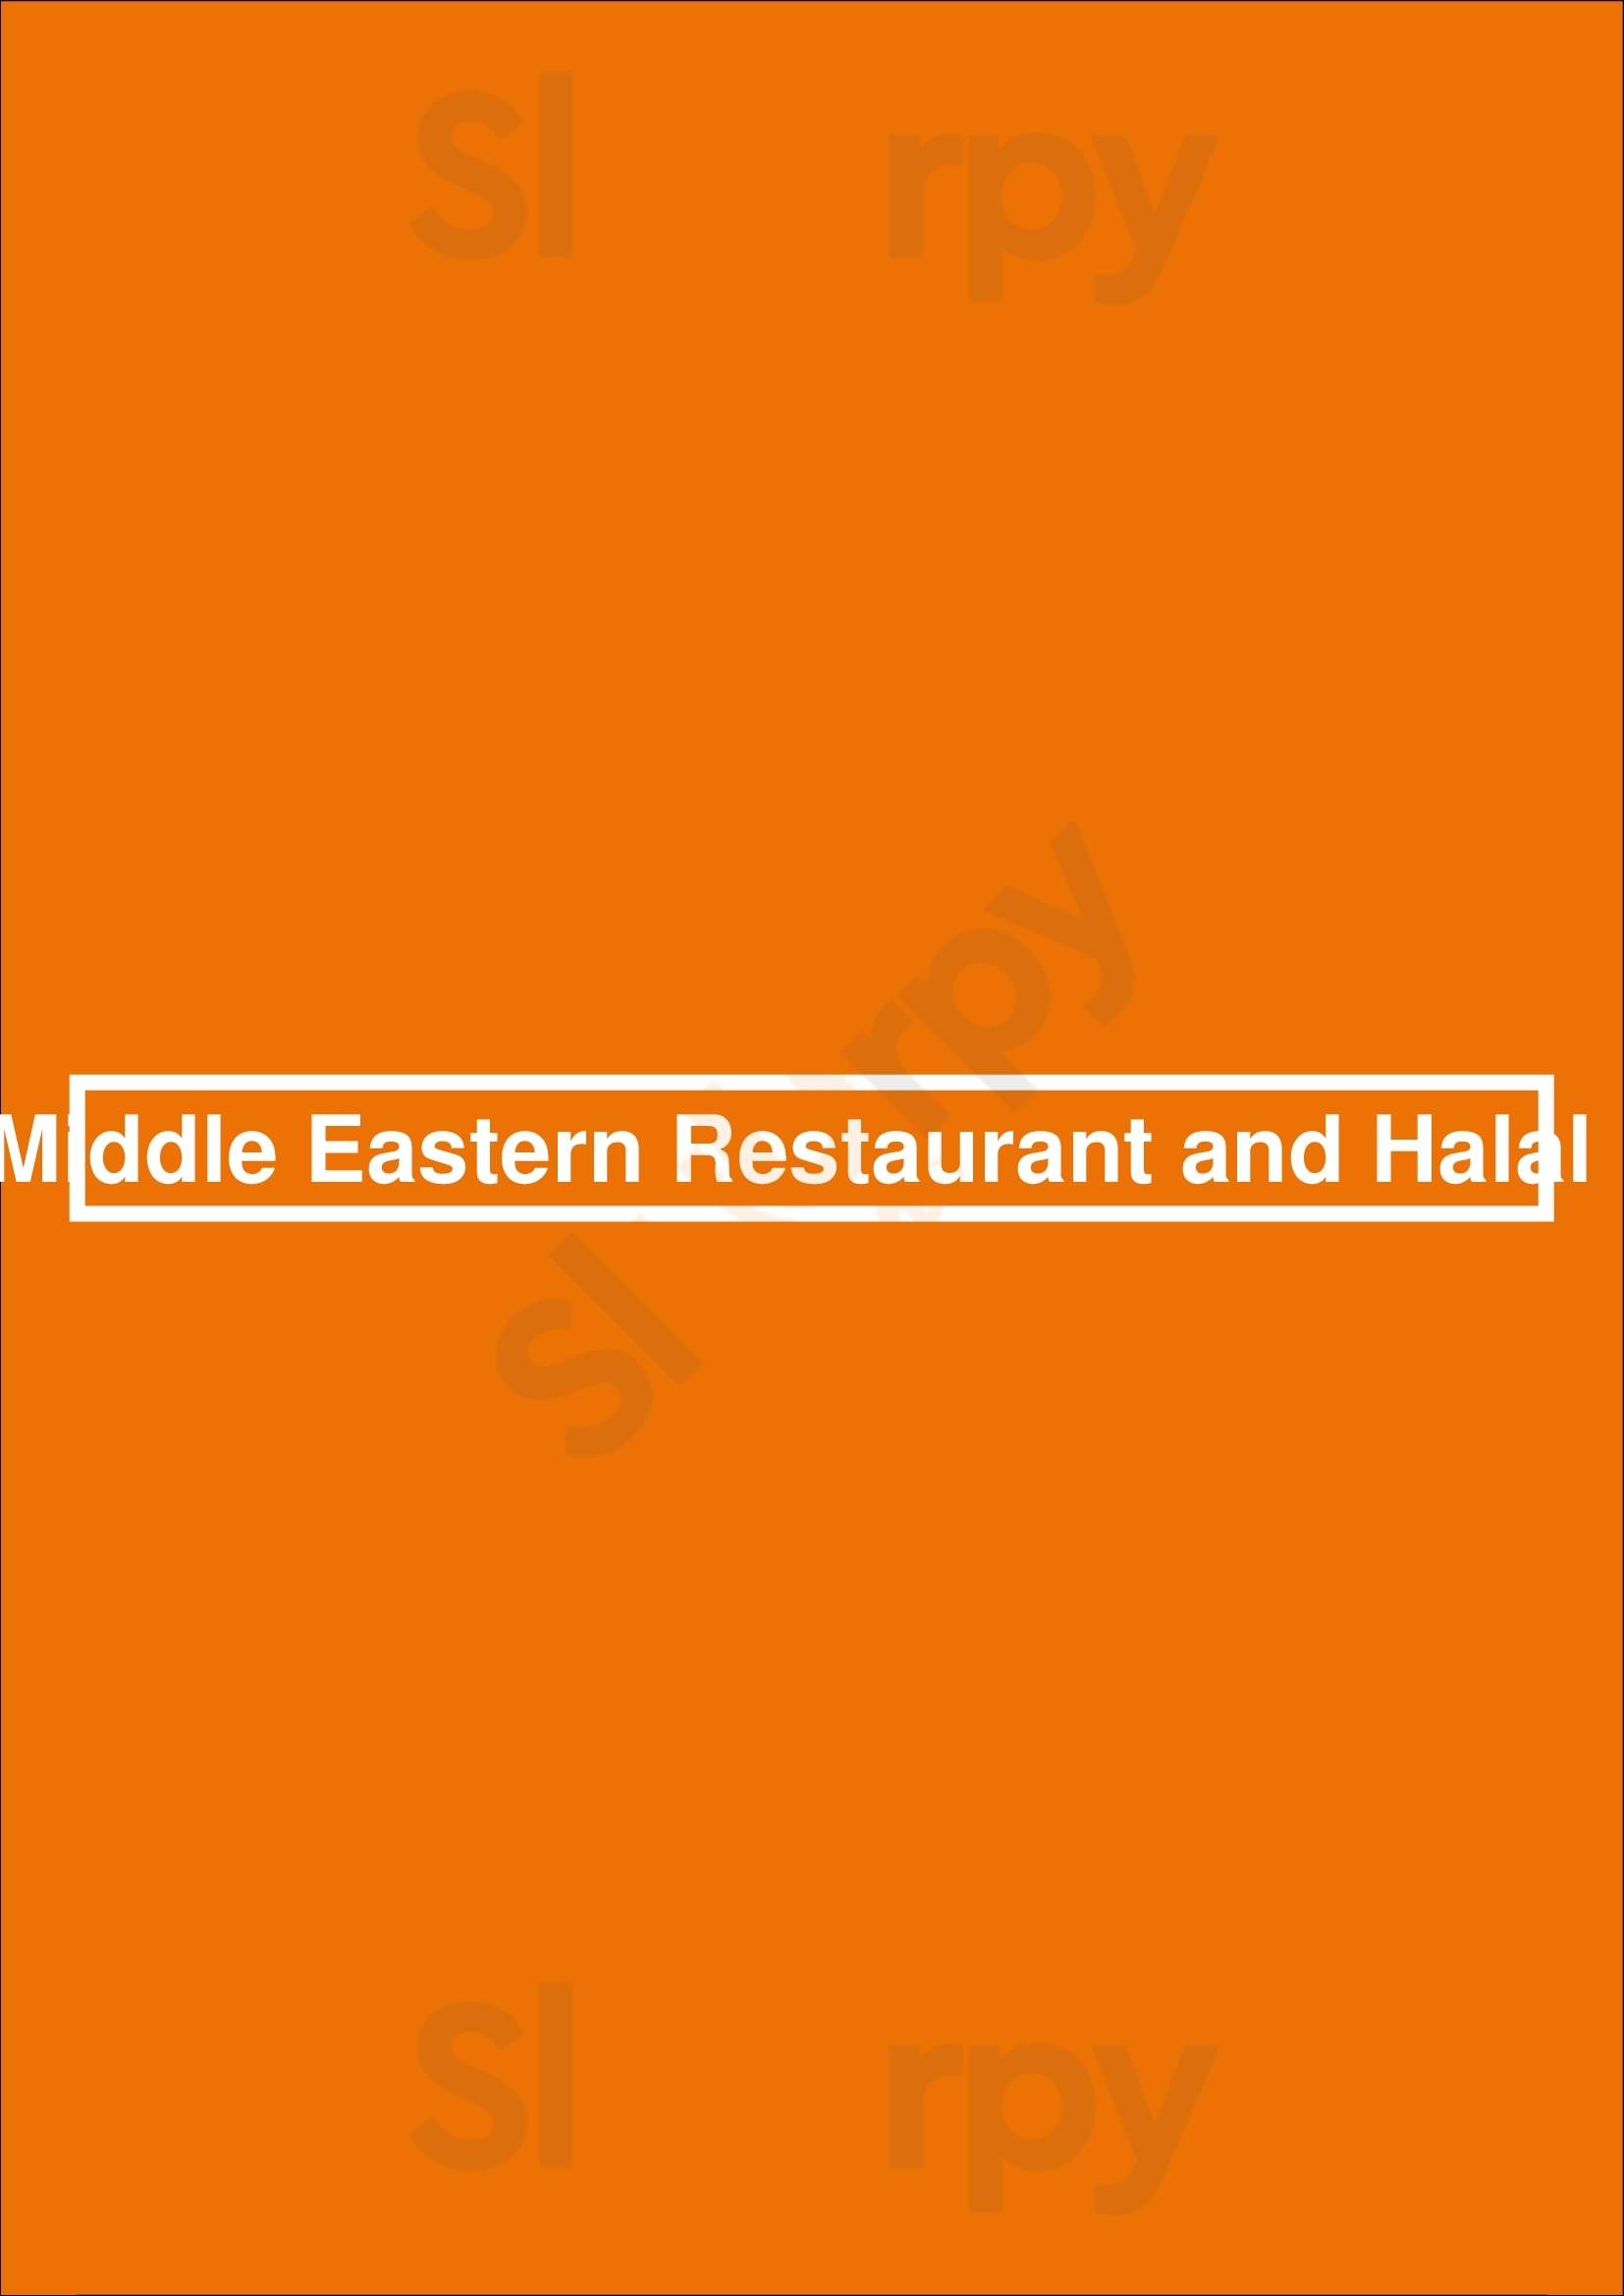 Oasis Middle Eastern Restaurant And Halal Market Newark Menu - 1